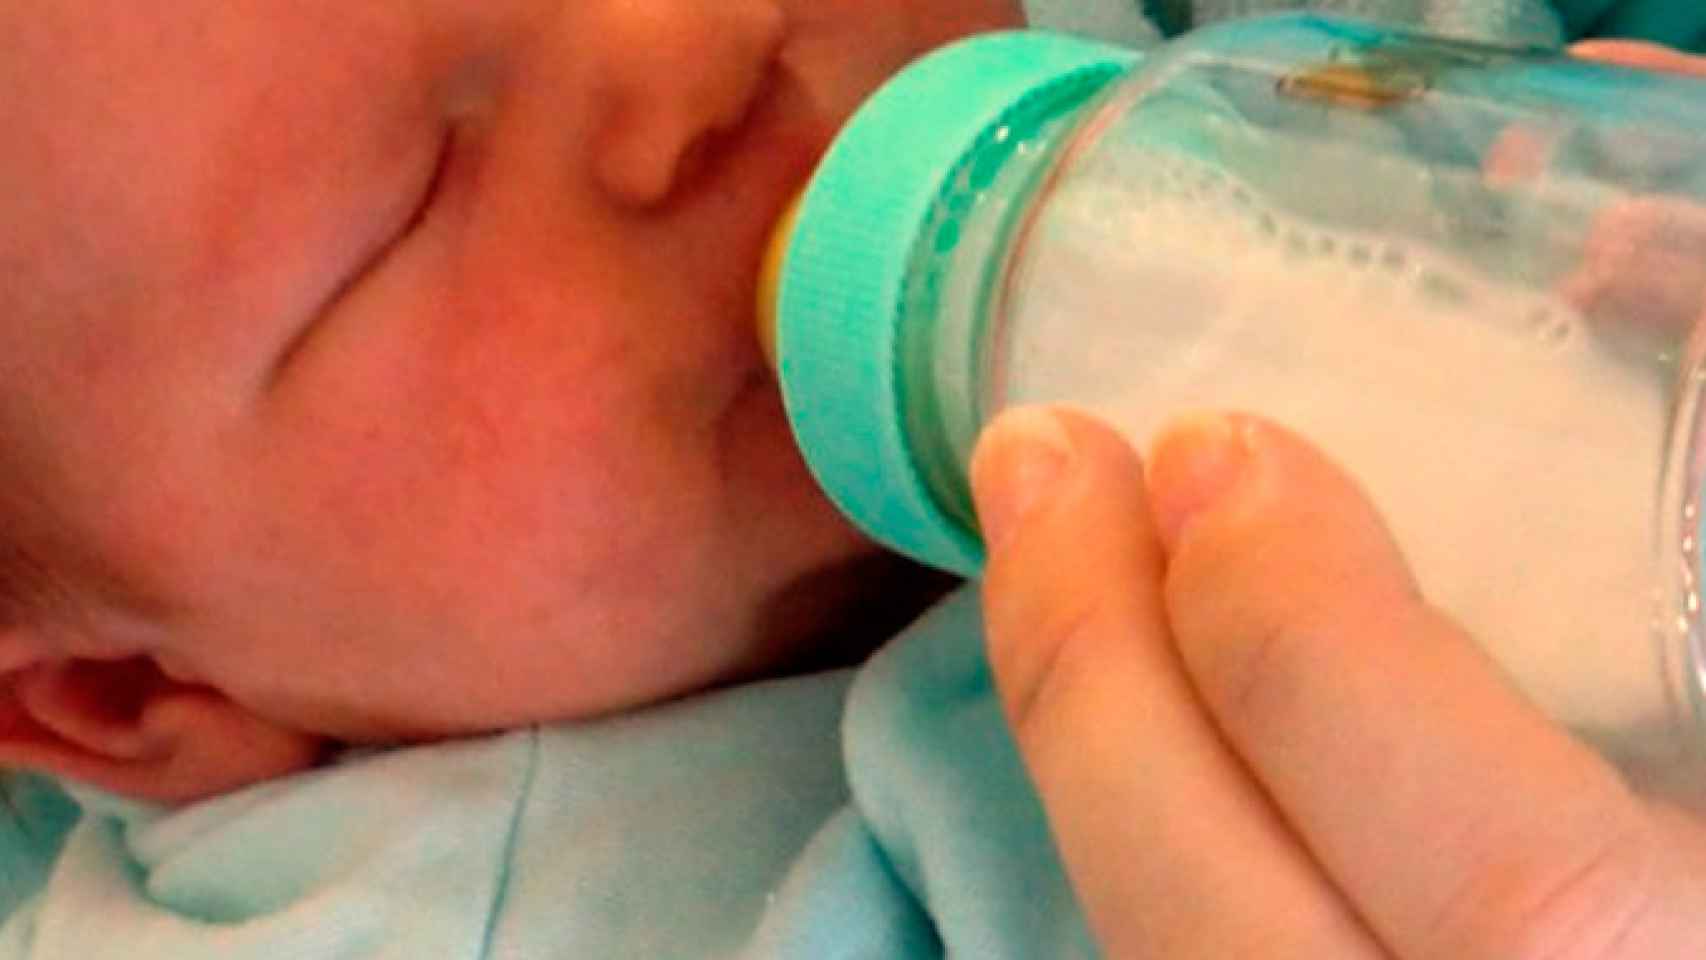 Un bebé bebe leche de un biberón